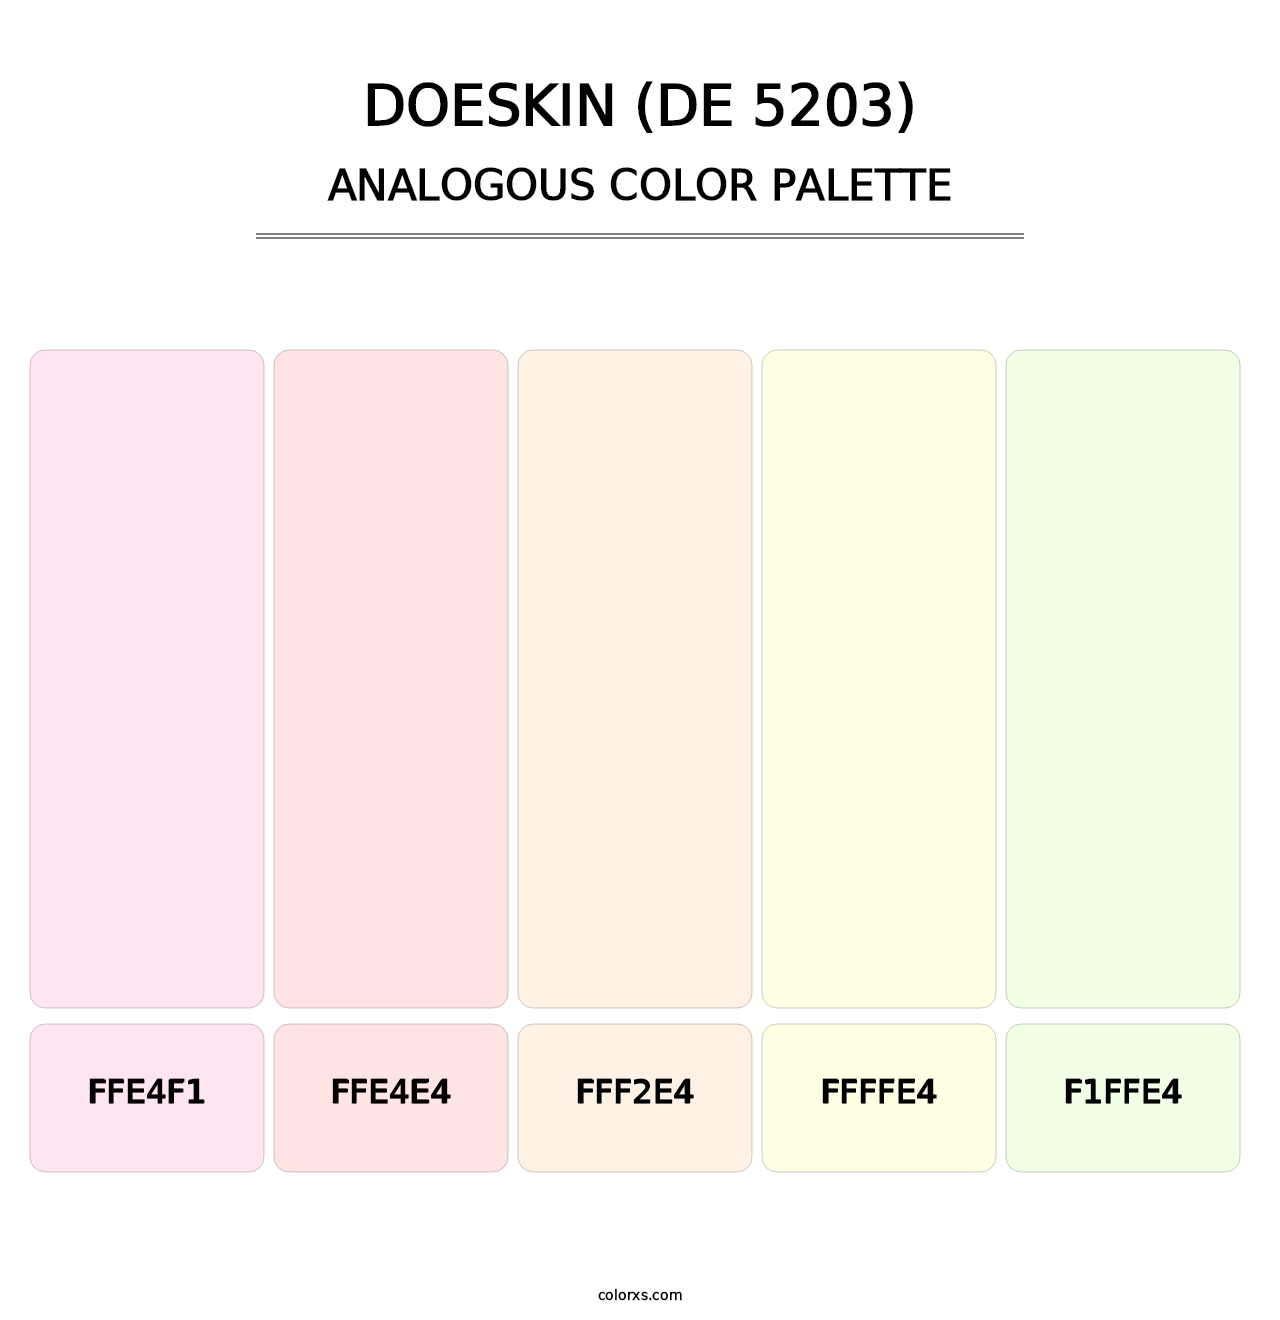 Doeskin (DE 5203) - Analogous Color Palette